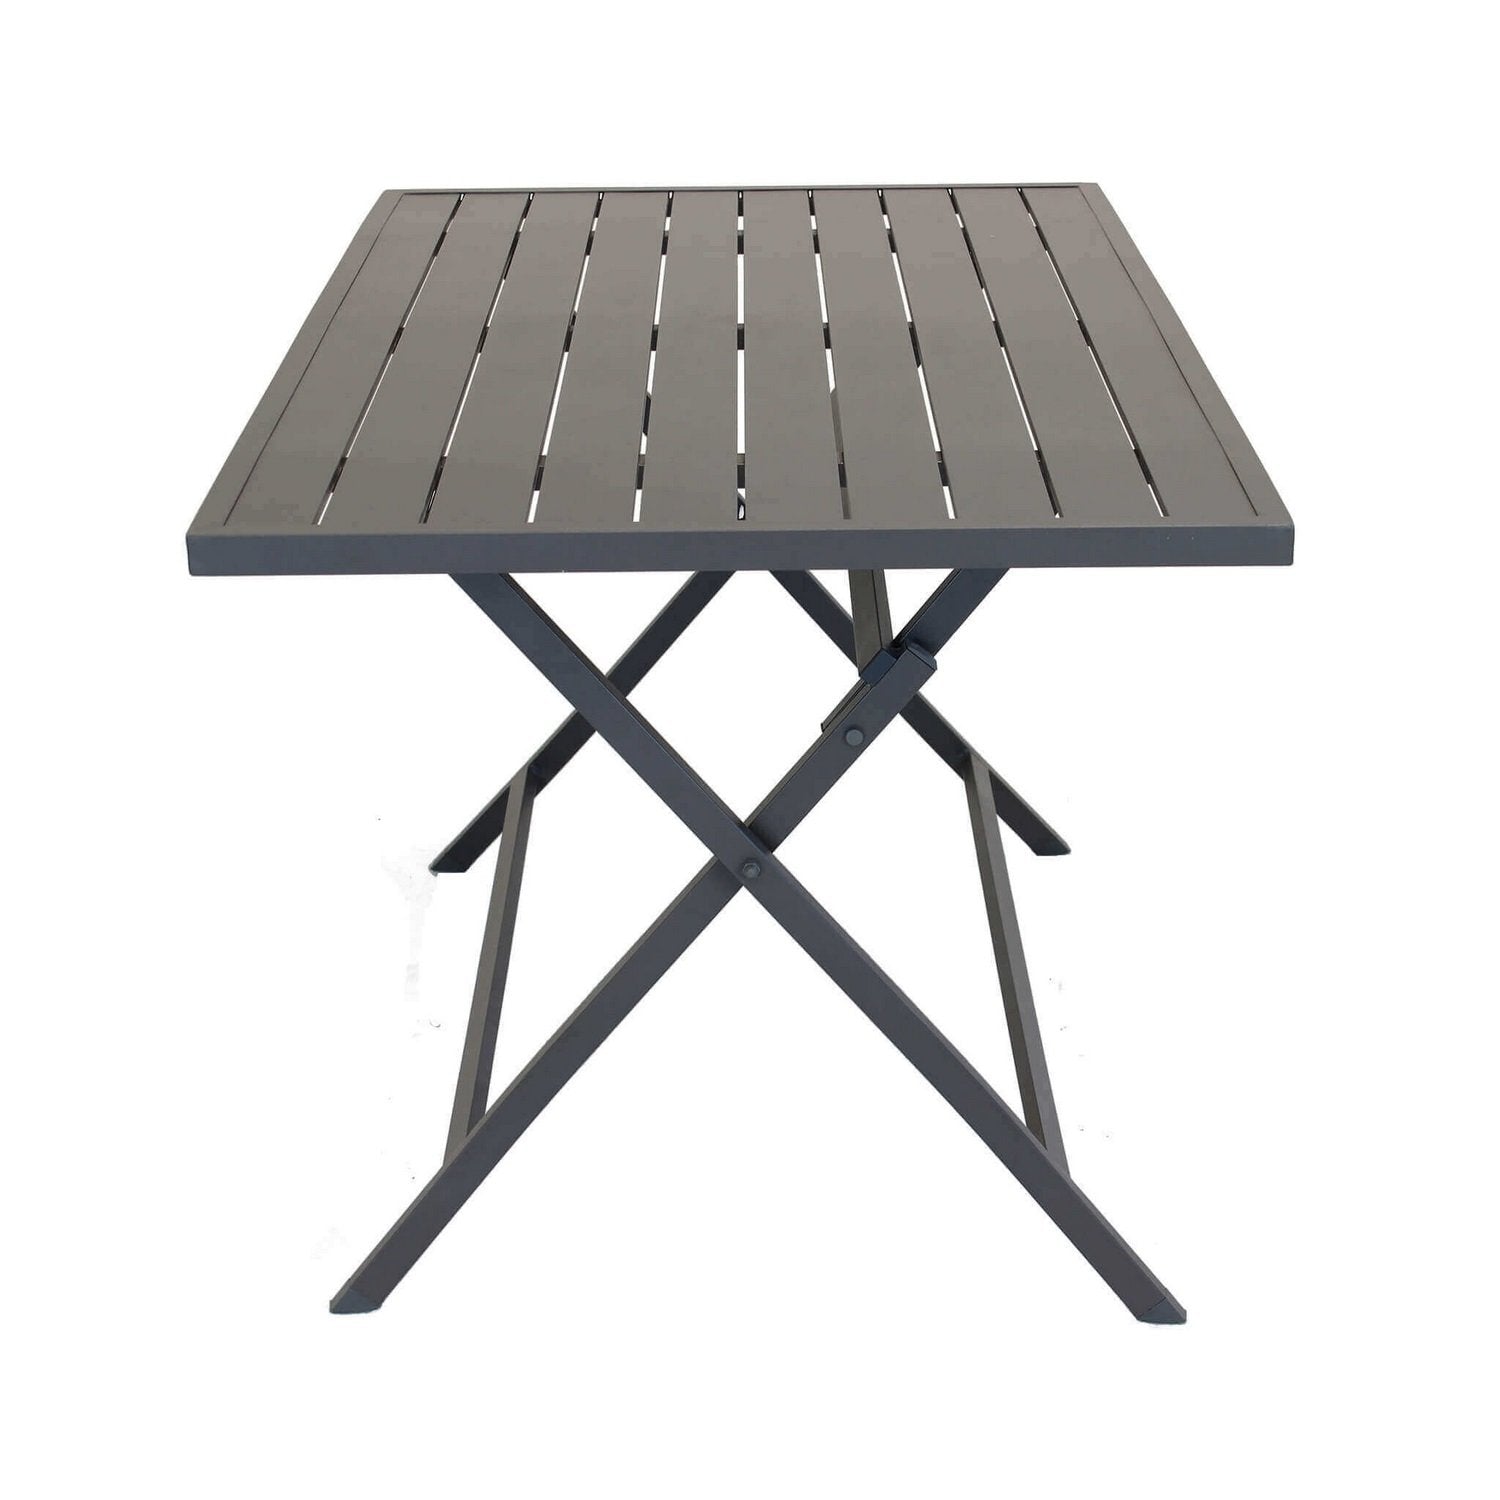 Tavolino pieghevole in alluminio 77x130x73h cm colore Taupe mod. Alabama